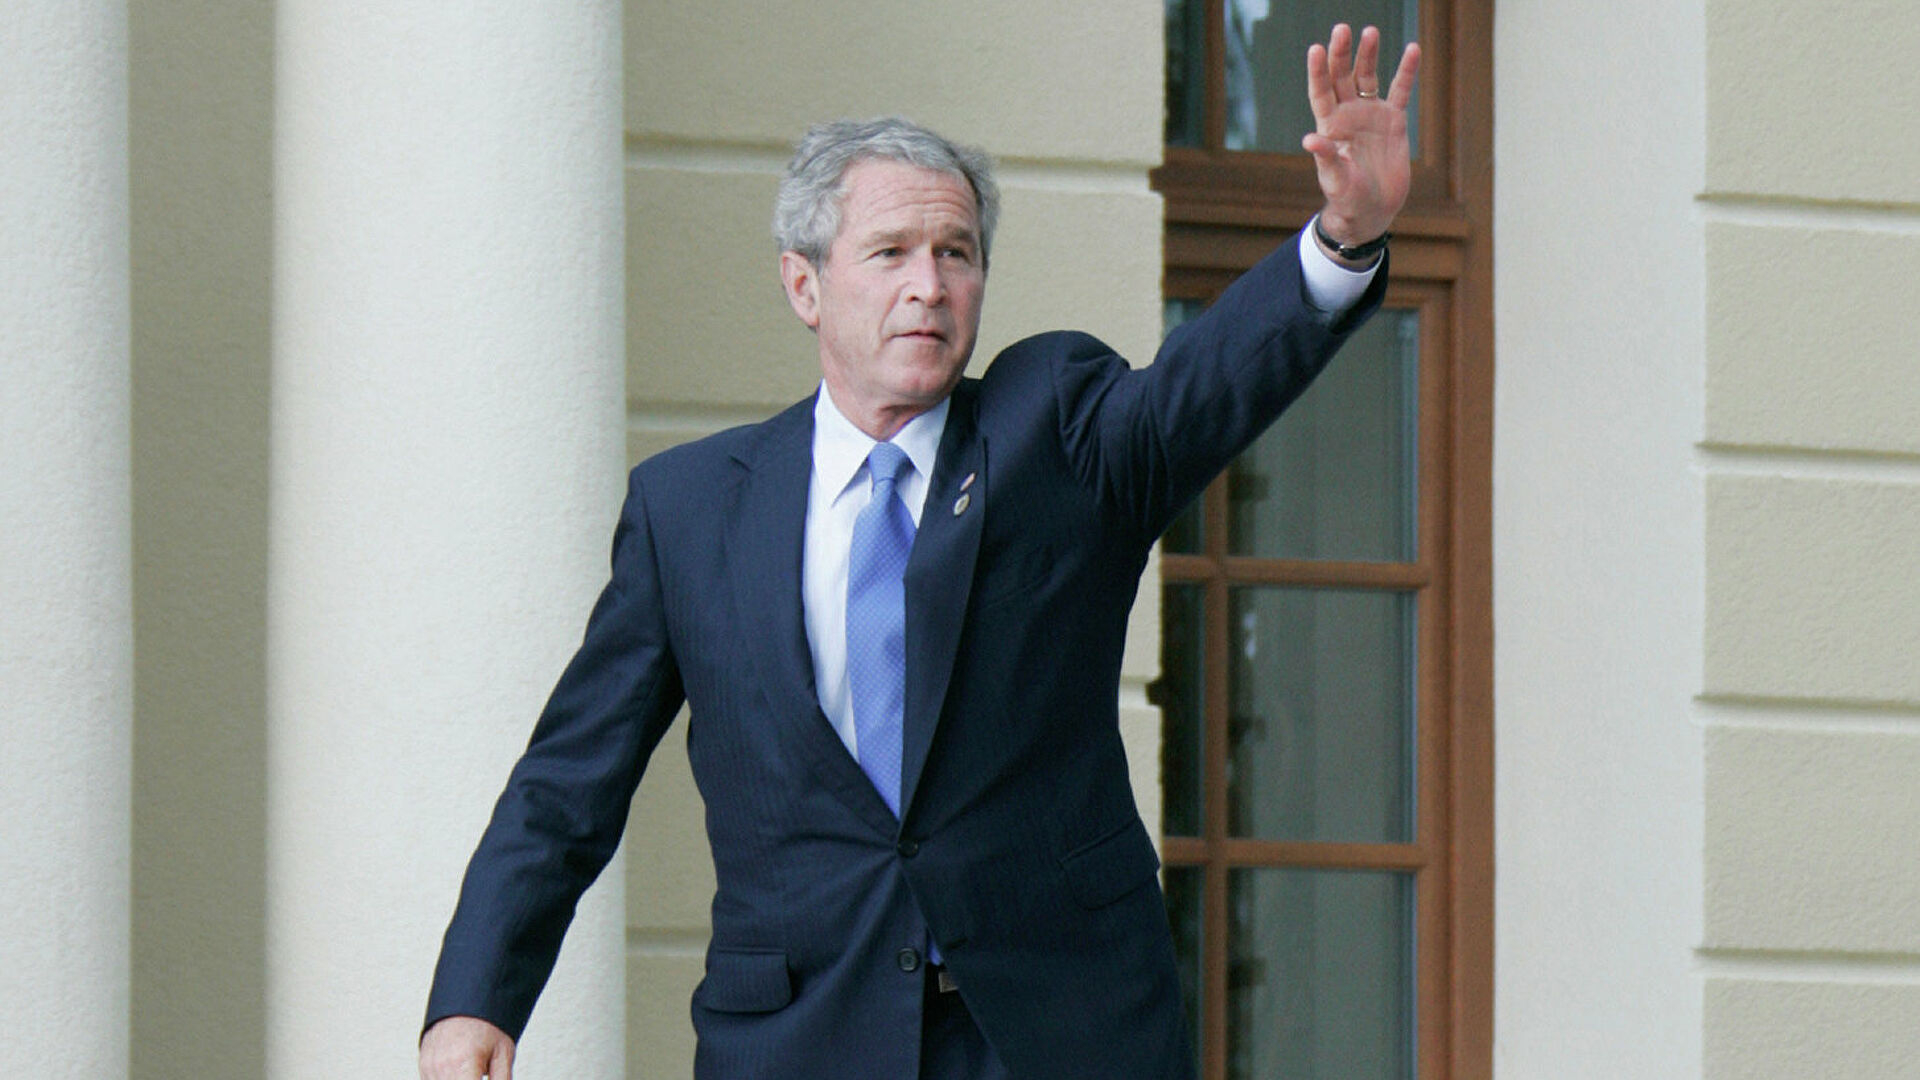 "Ты должен сидеть в тюрьме": ученый сорвал выступление Джорджа Буша - ВИДЕО